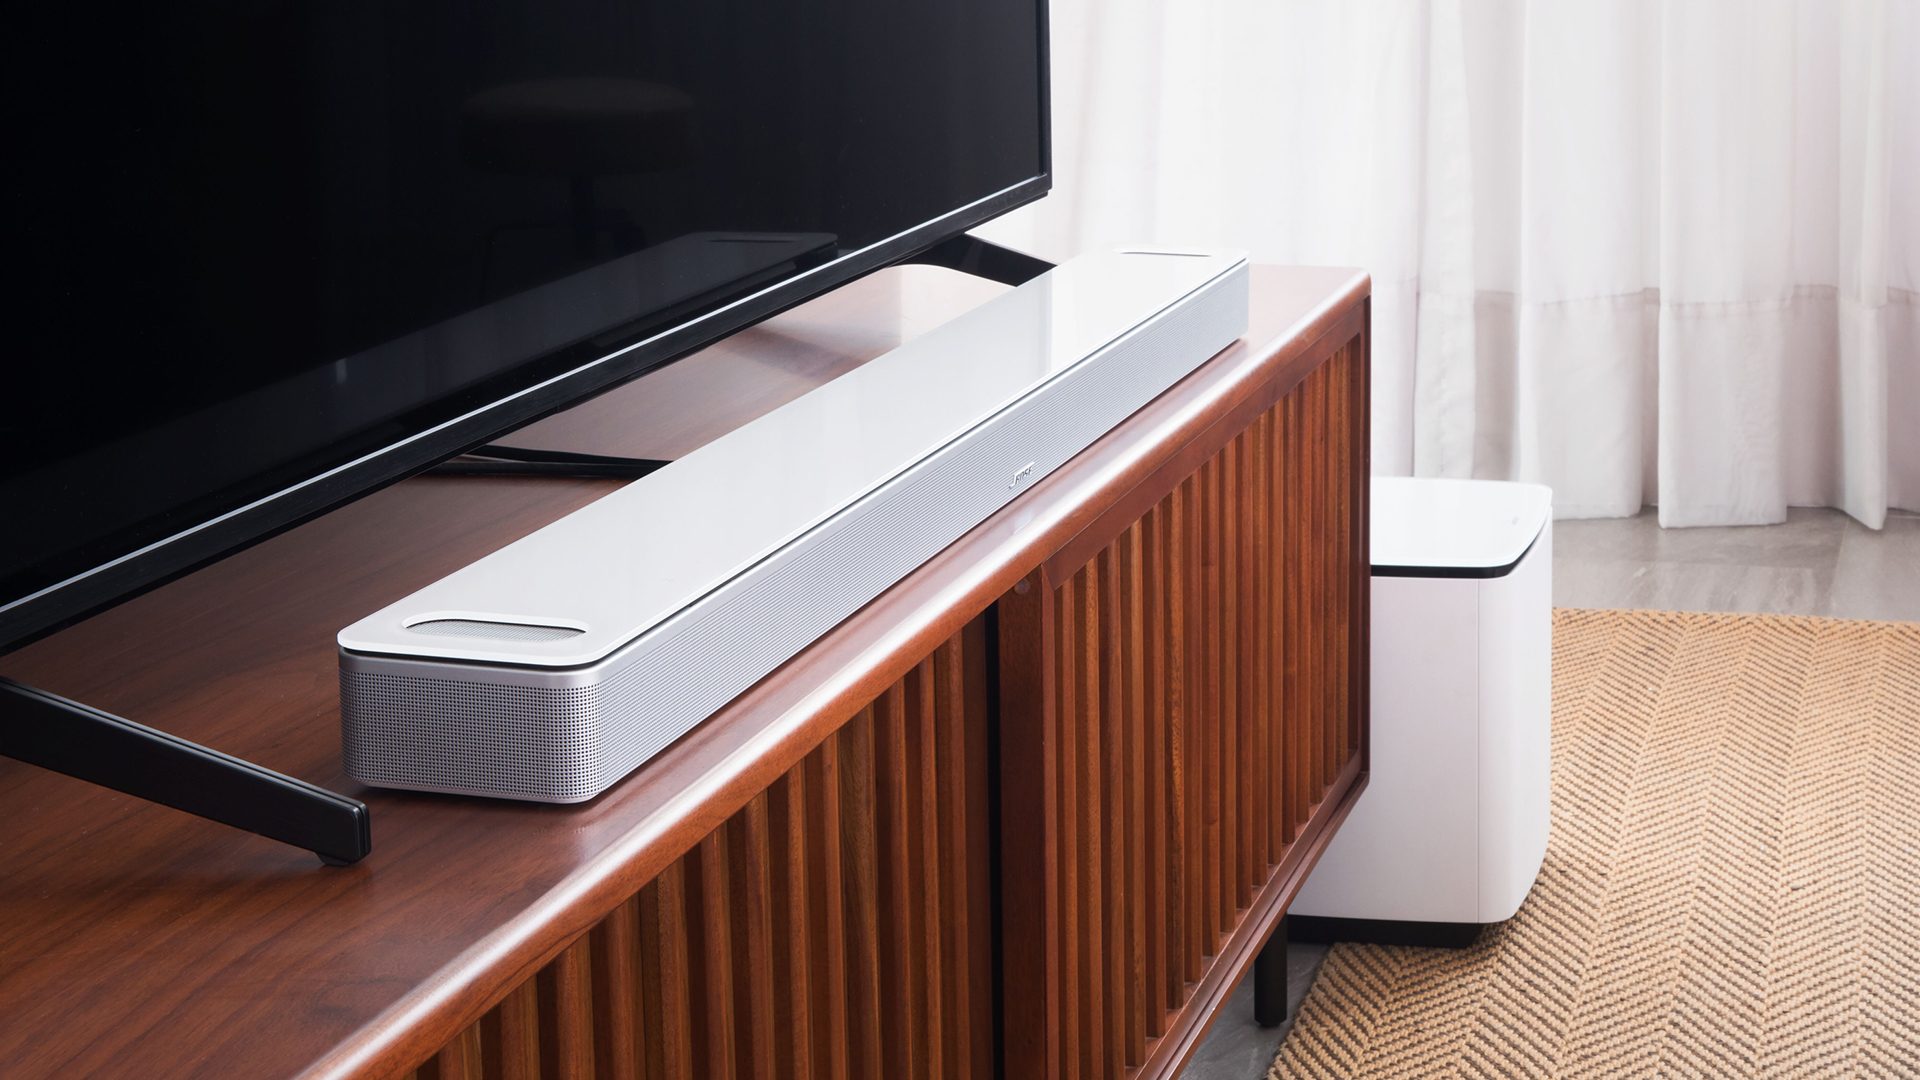 Mejora el sonido de tu Smart TV con la oferta en esta barra de sonido Bose:  aprovecha su diseño compacto y su descuentazo en